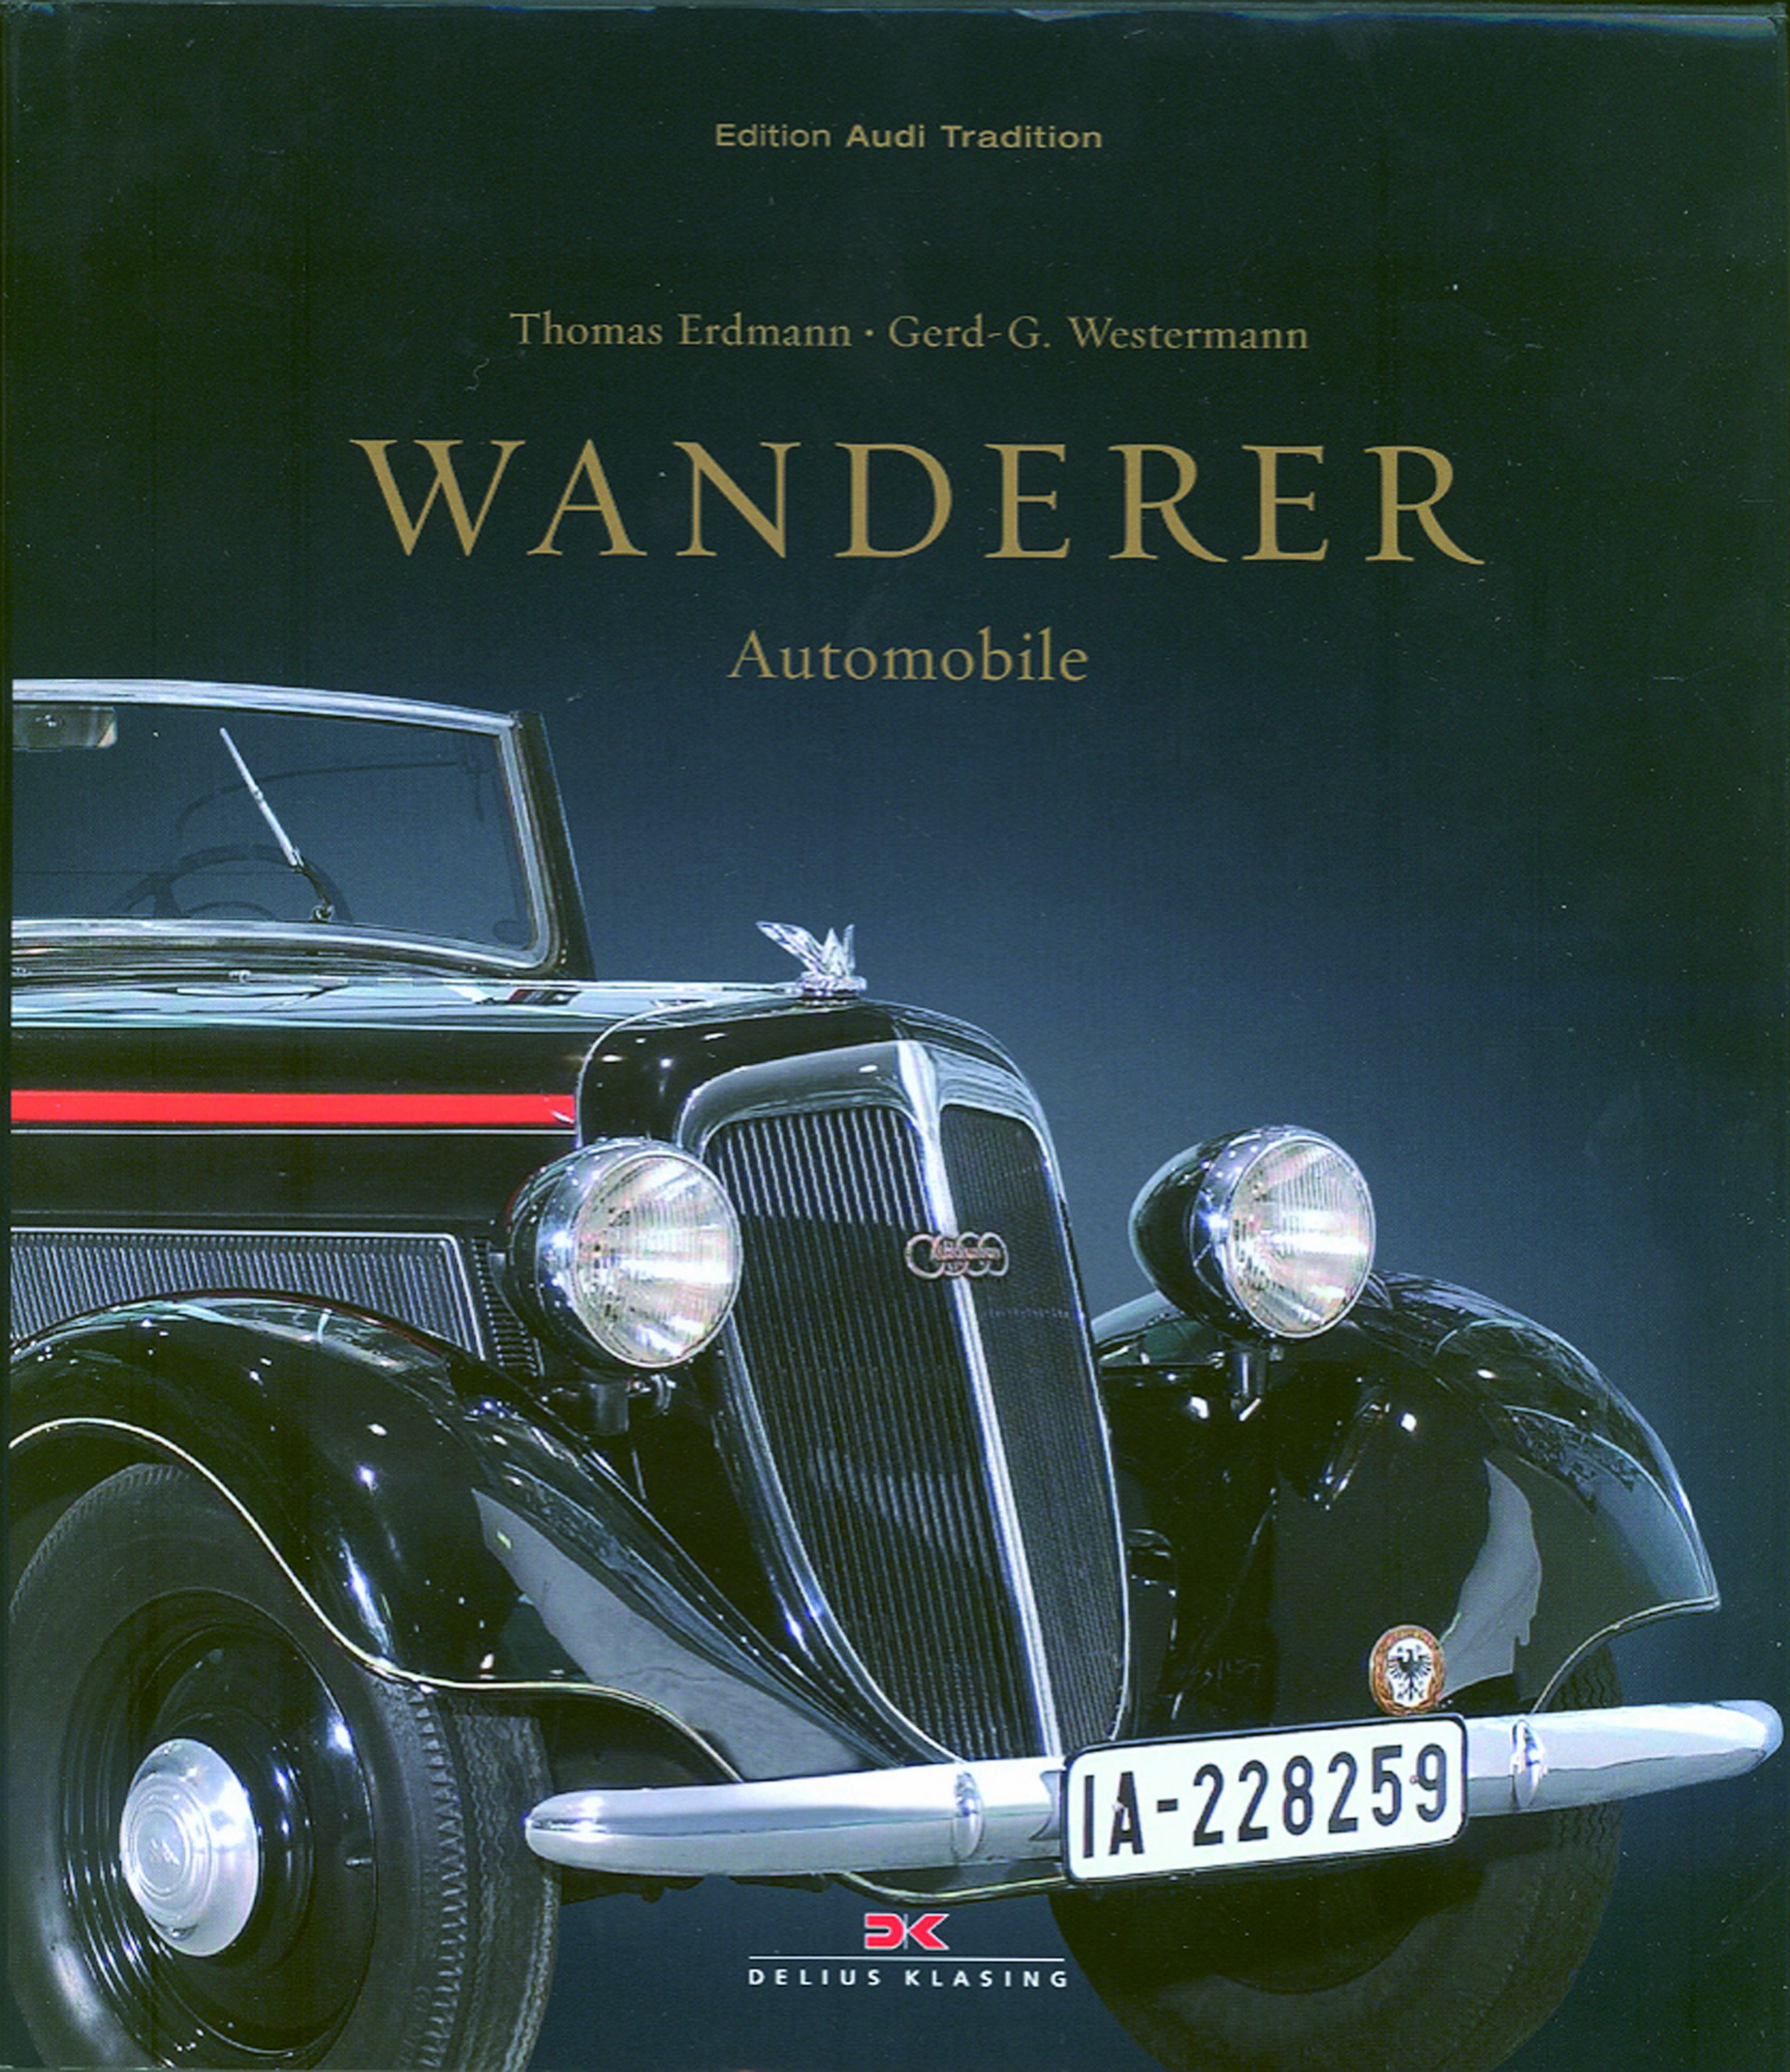 Die Geschichte der Wanderer Automobile